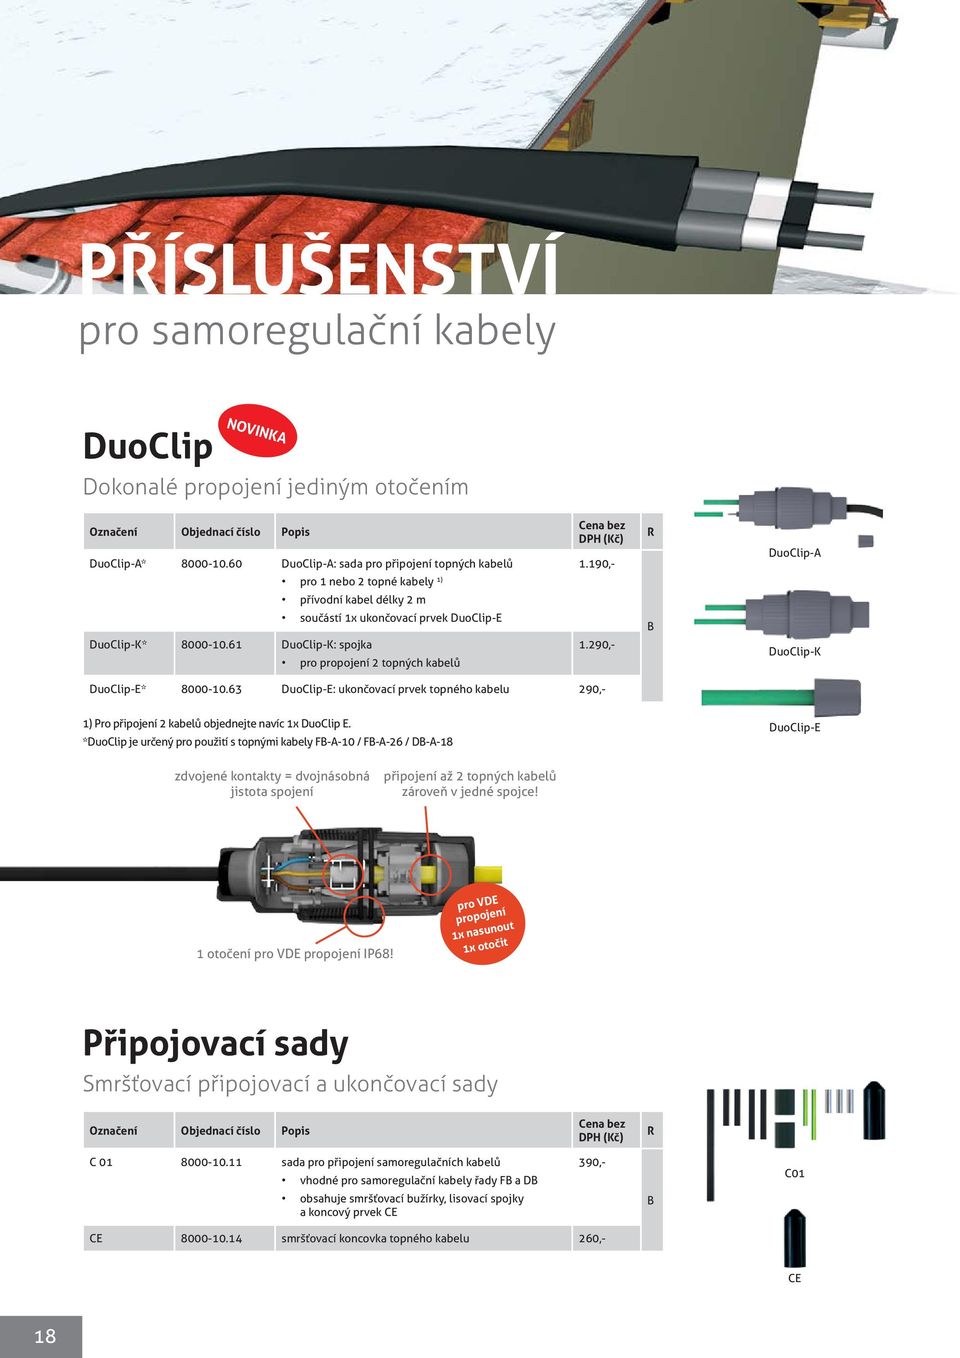 290,- B DuoClip-K DuoClip-E* 8000-10.63 DuoClip-E: ukončovací prvek topného kabelu 290,- 1) Pro připojení 2 kabelů objednejte navíc 1x DuoClip E.